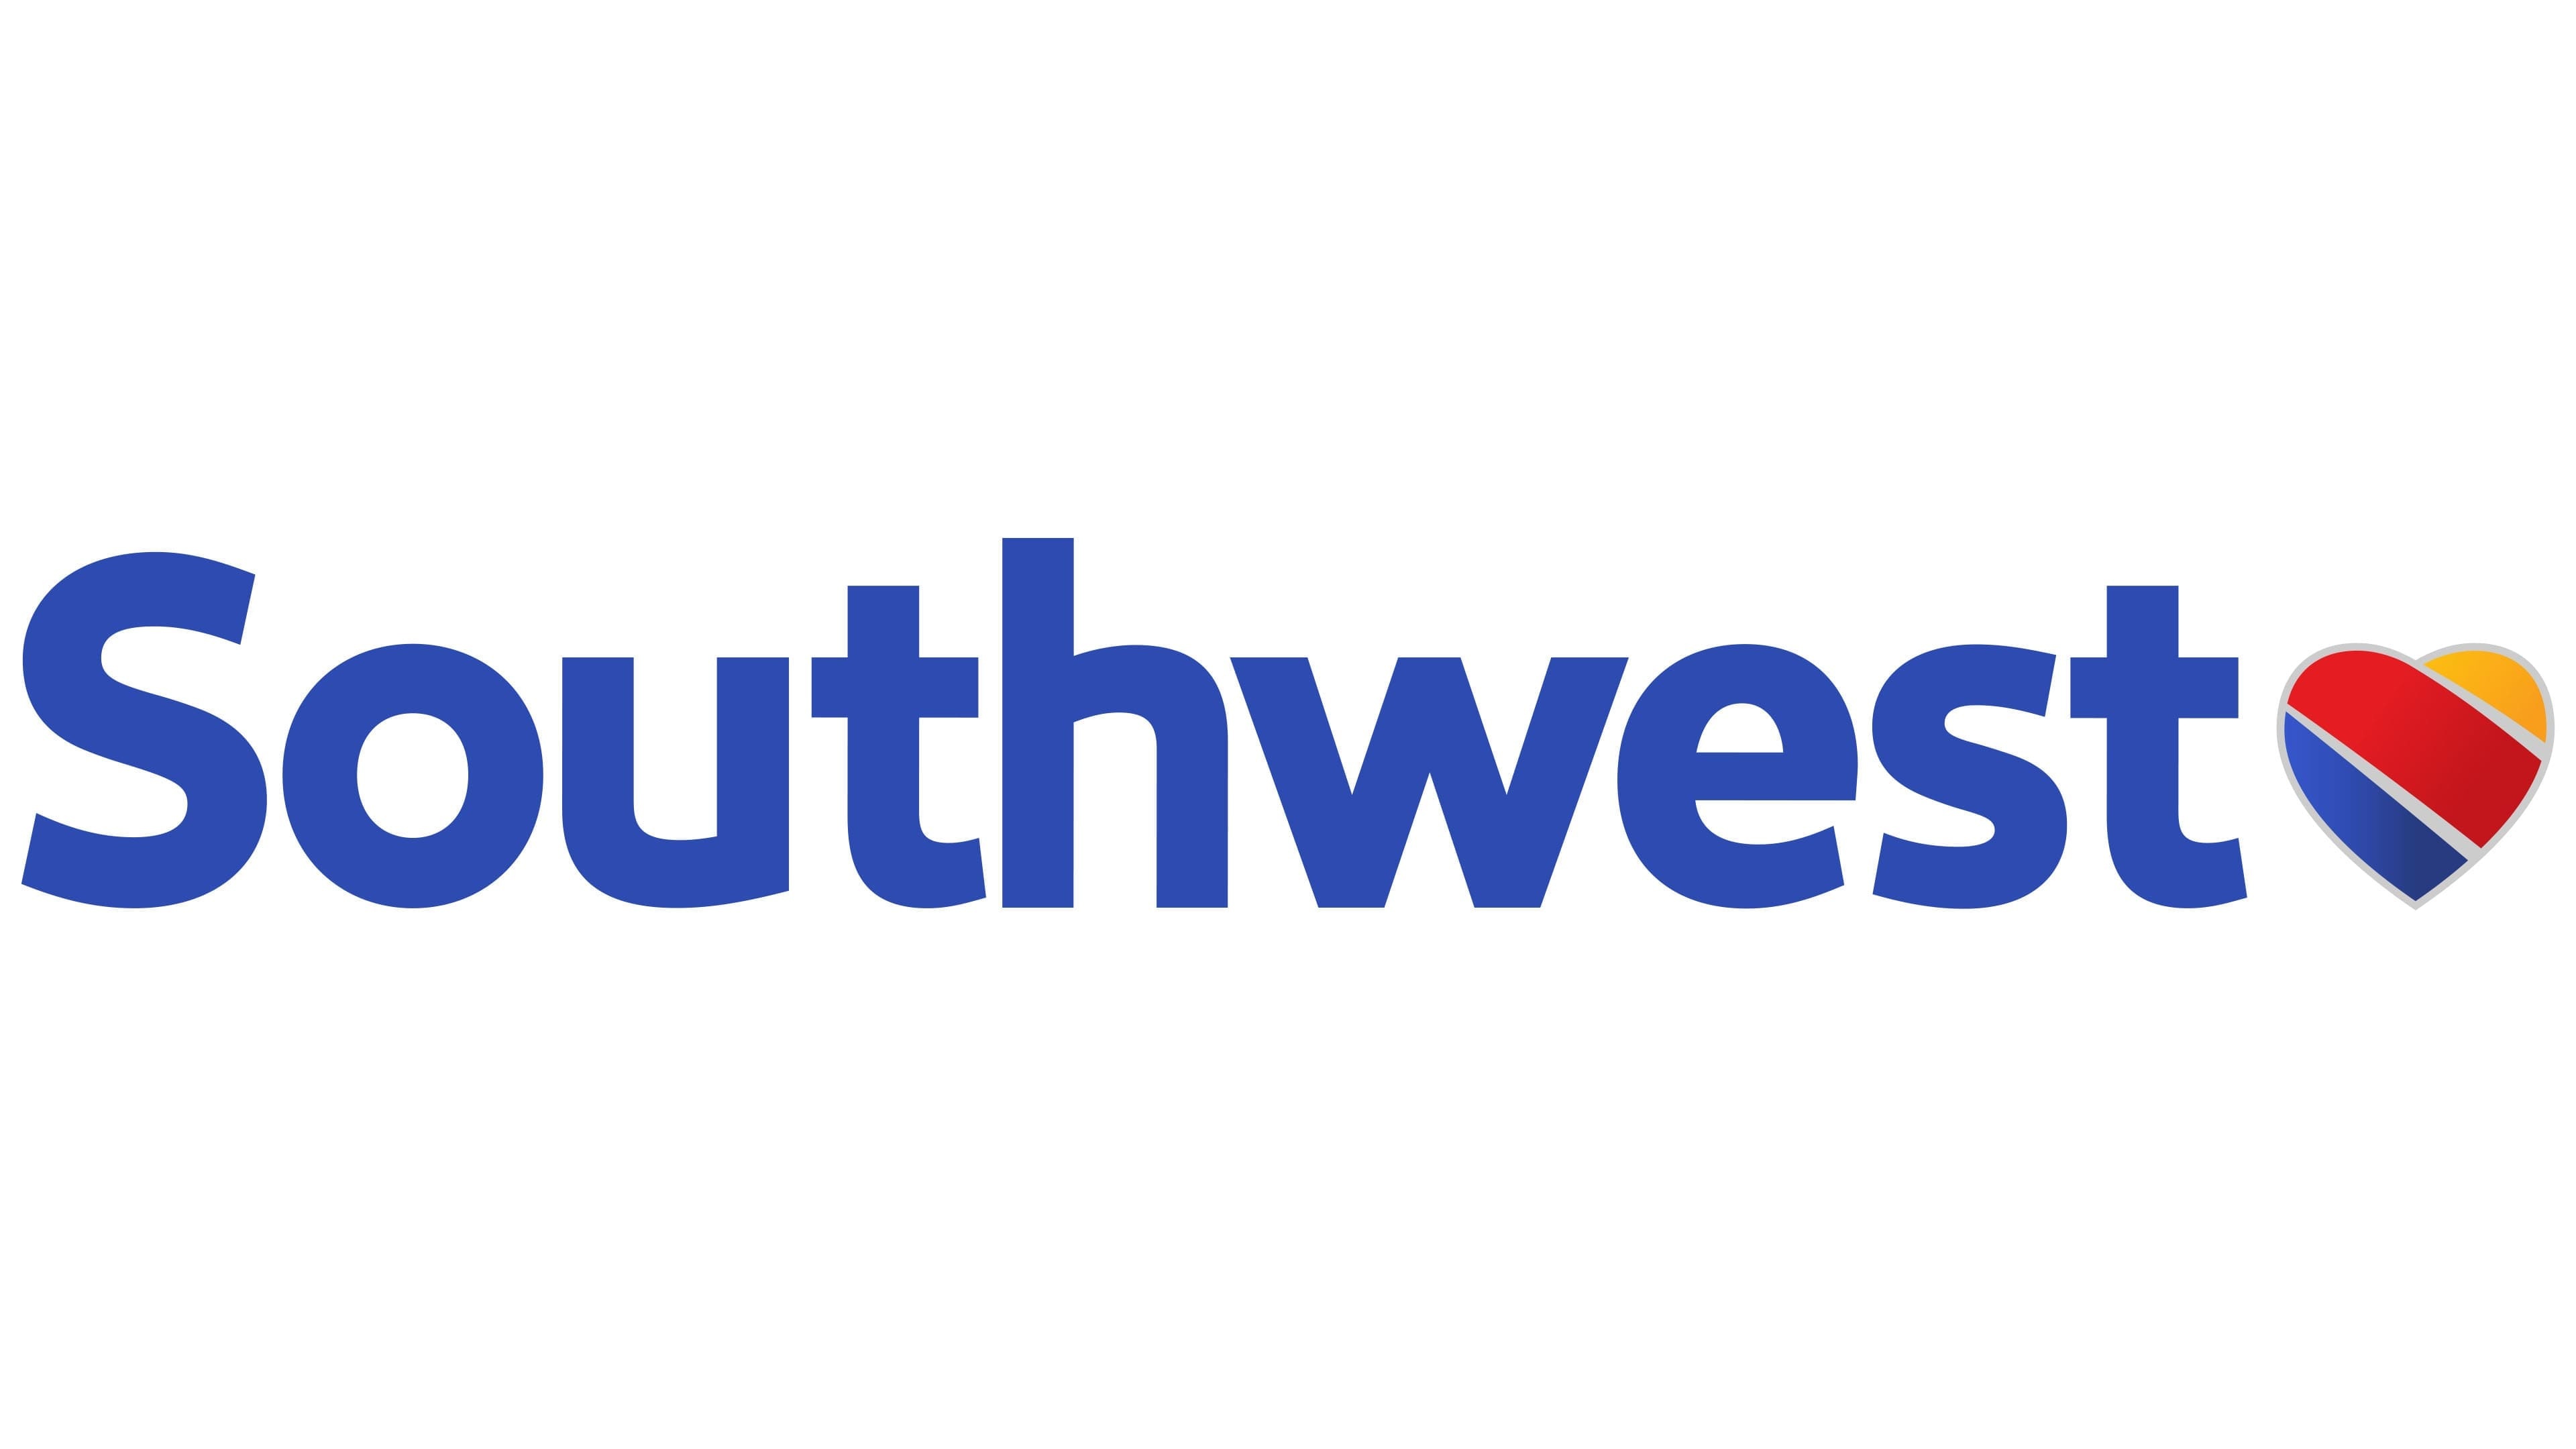 HD wallpaper, 3840X2160 4K Desktop, Logo Meaning, Brand Image, Desktop 4K Southwest Airlines Wallpaper, Symbol History, Southwest Airlines